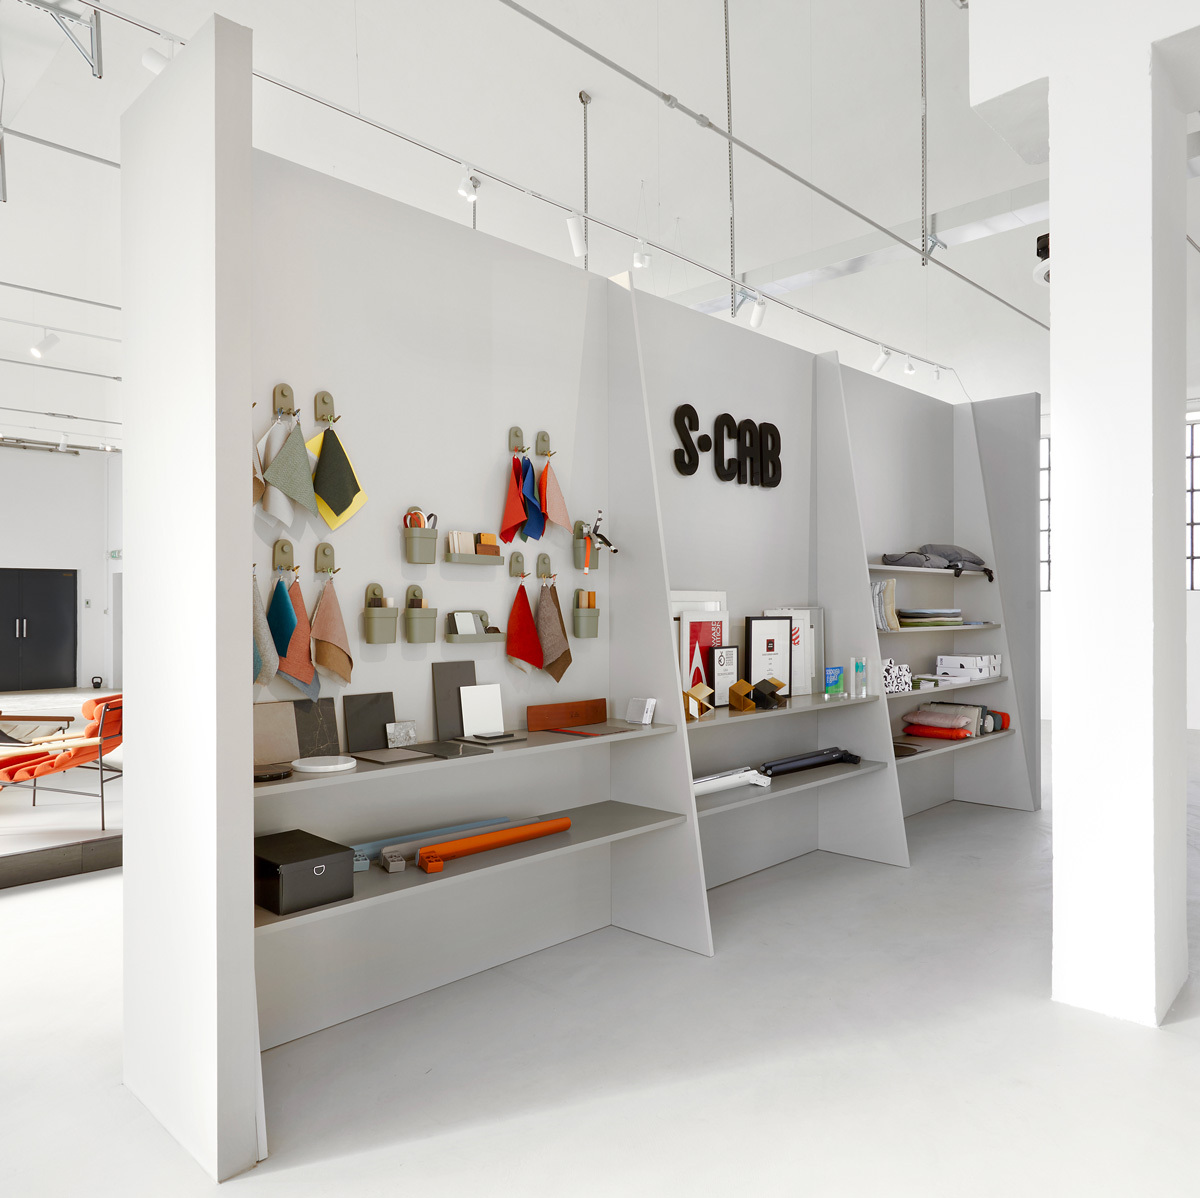 Un nuovo showroom come visione contemporanea dell'identità aziendale 